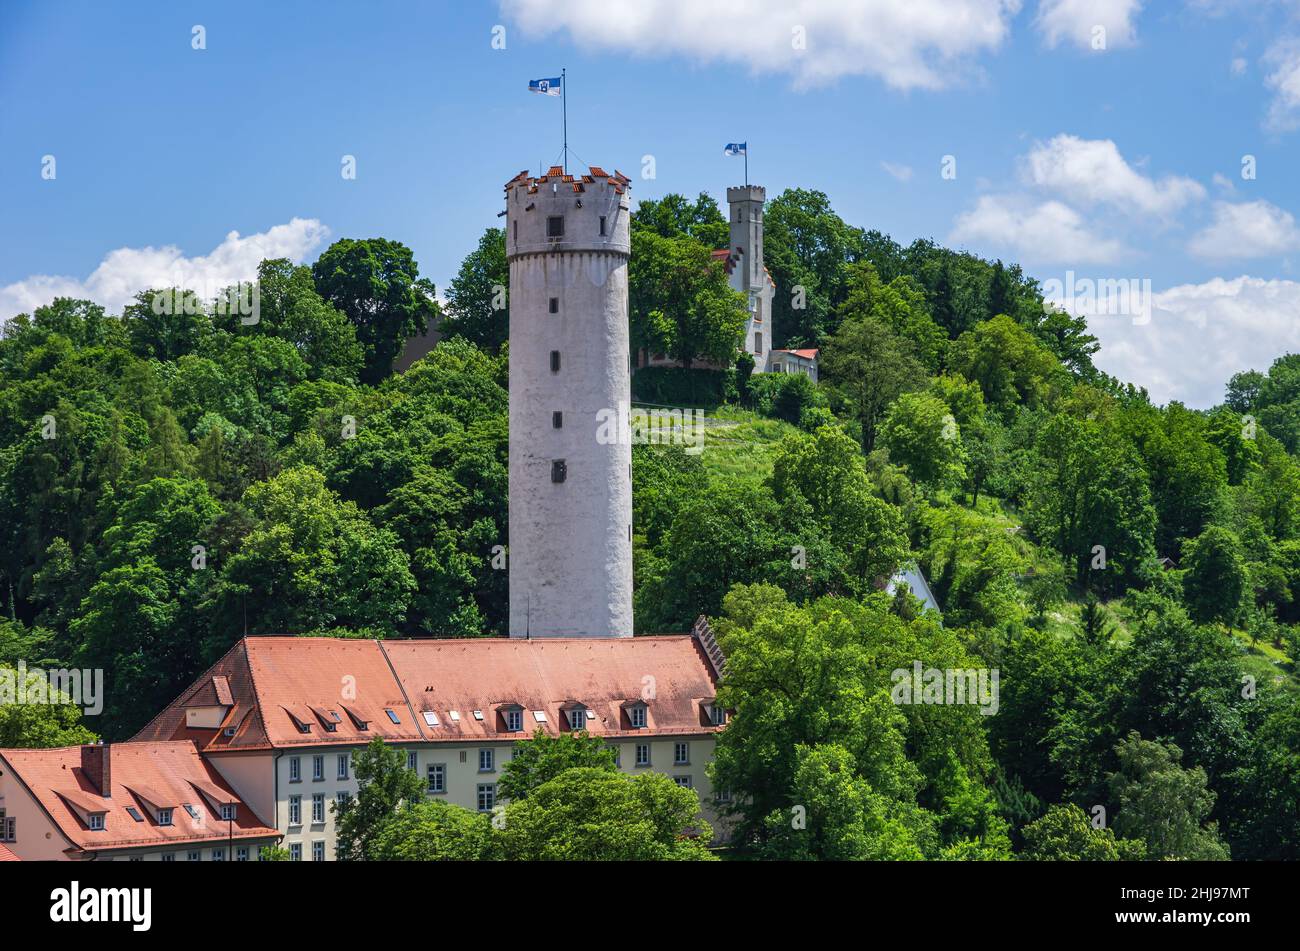 Ravensburg, Bade-Wurtemberg, Allemagne : vue depuis la tour Blaser sur les toits de la ville jusqu'à la tour Mehlsack et le château de Vitus. Banque D'Images